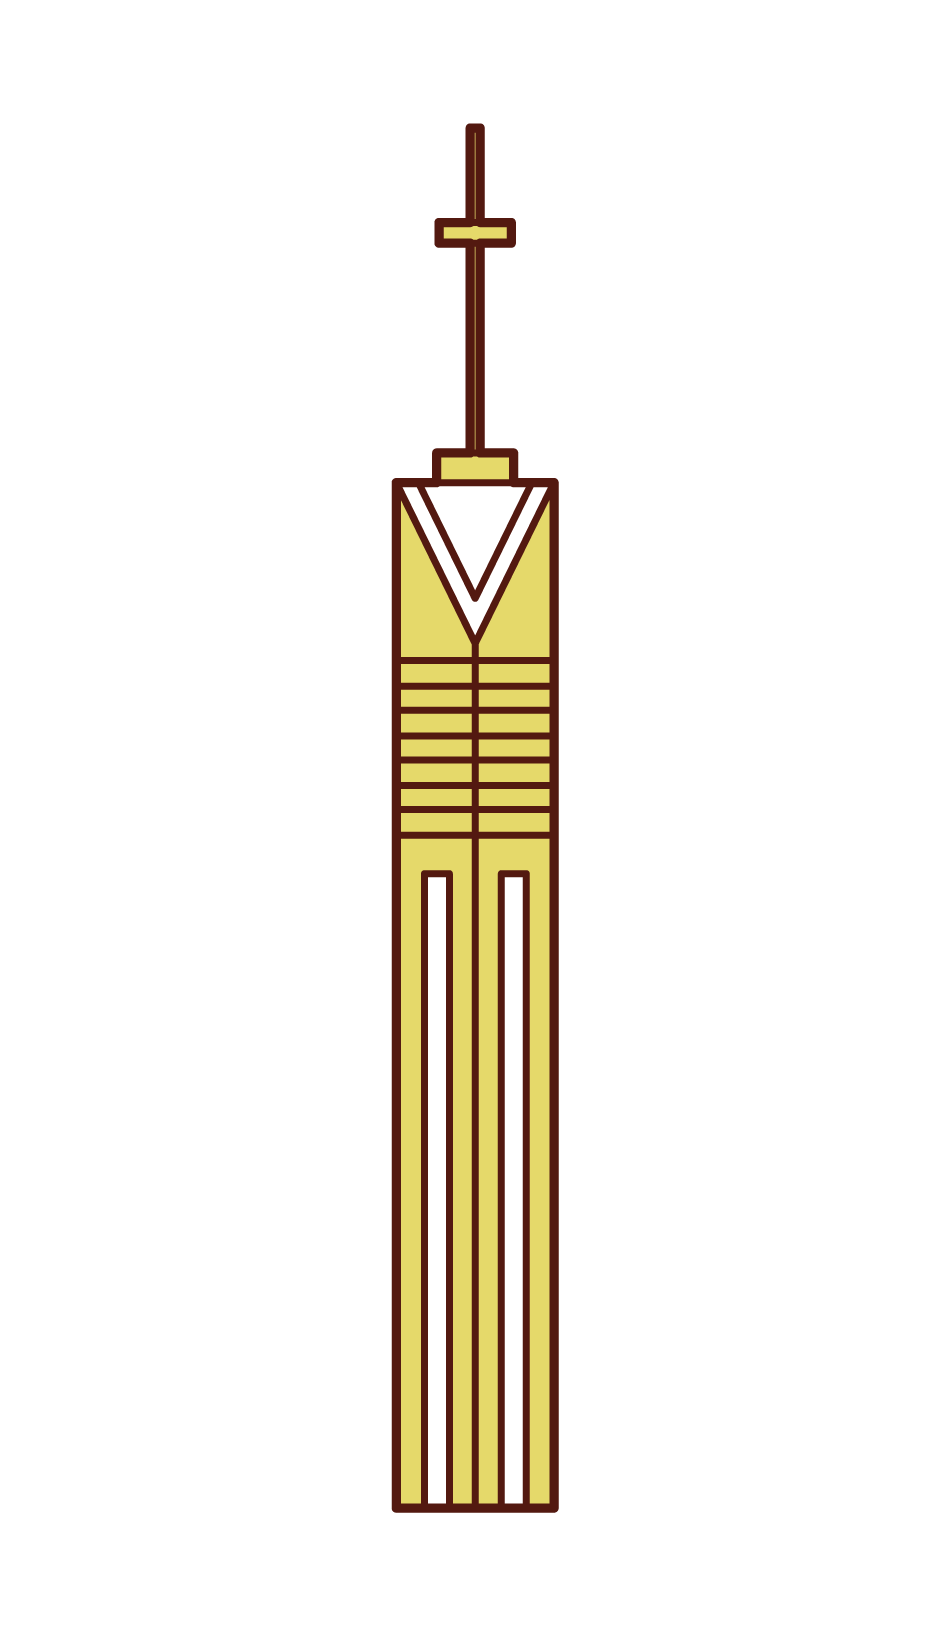 Illustration of Fukuoka Tower